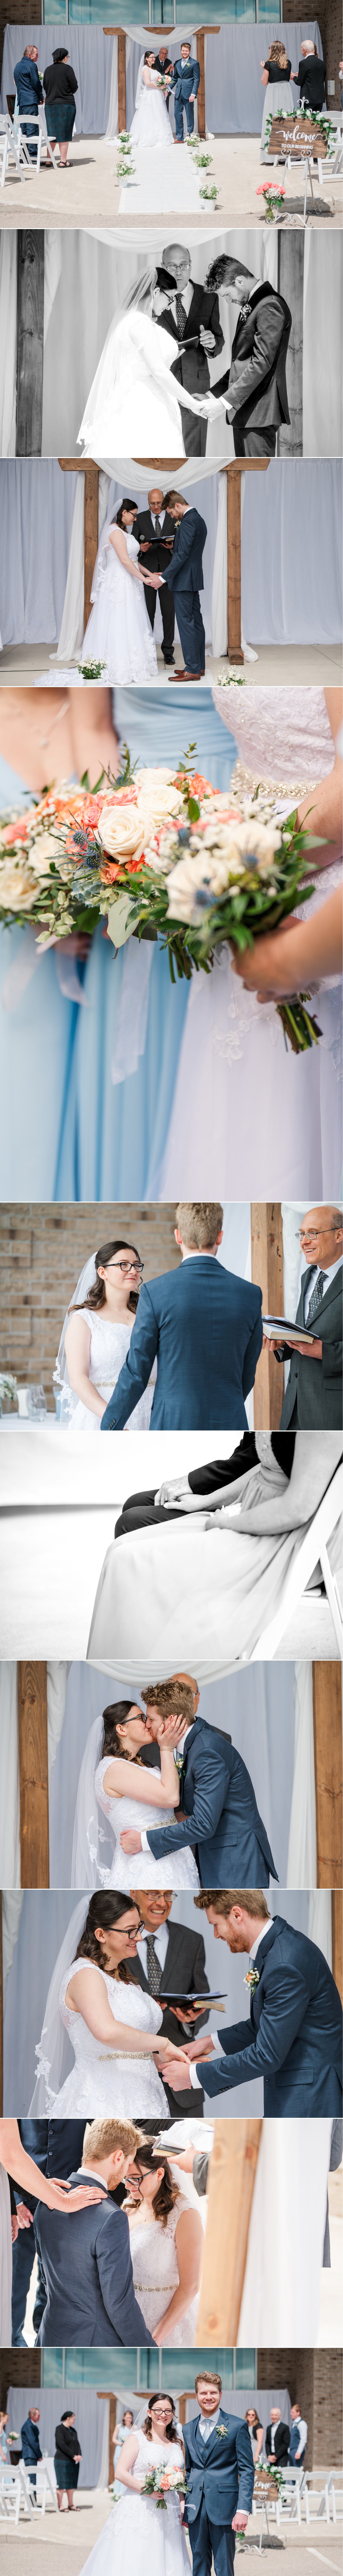 Perth County Wedding| Wedding details| Wedding portraits| Huron County weddings| Wedding photography| wedding photographer| Aiden Laurette Photography| Ontario wedding photographer